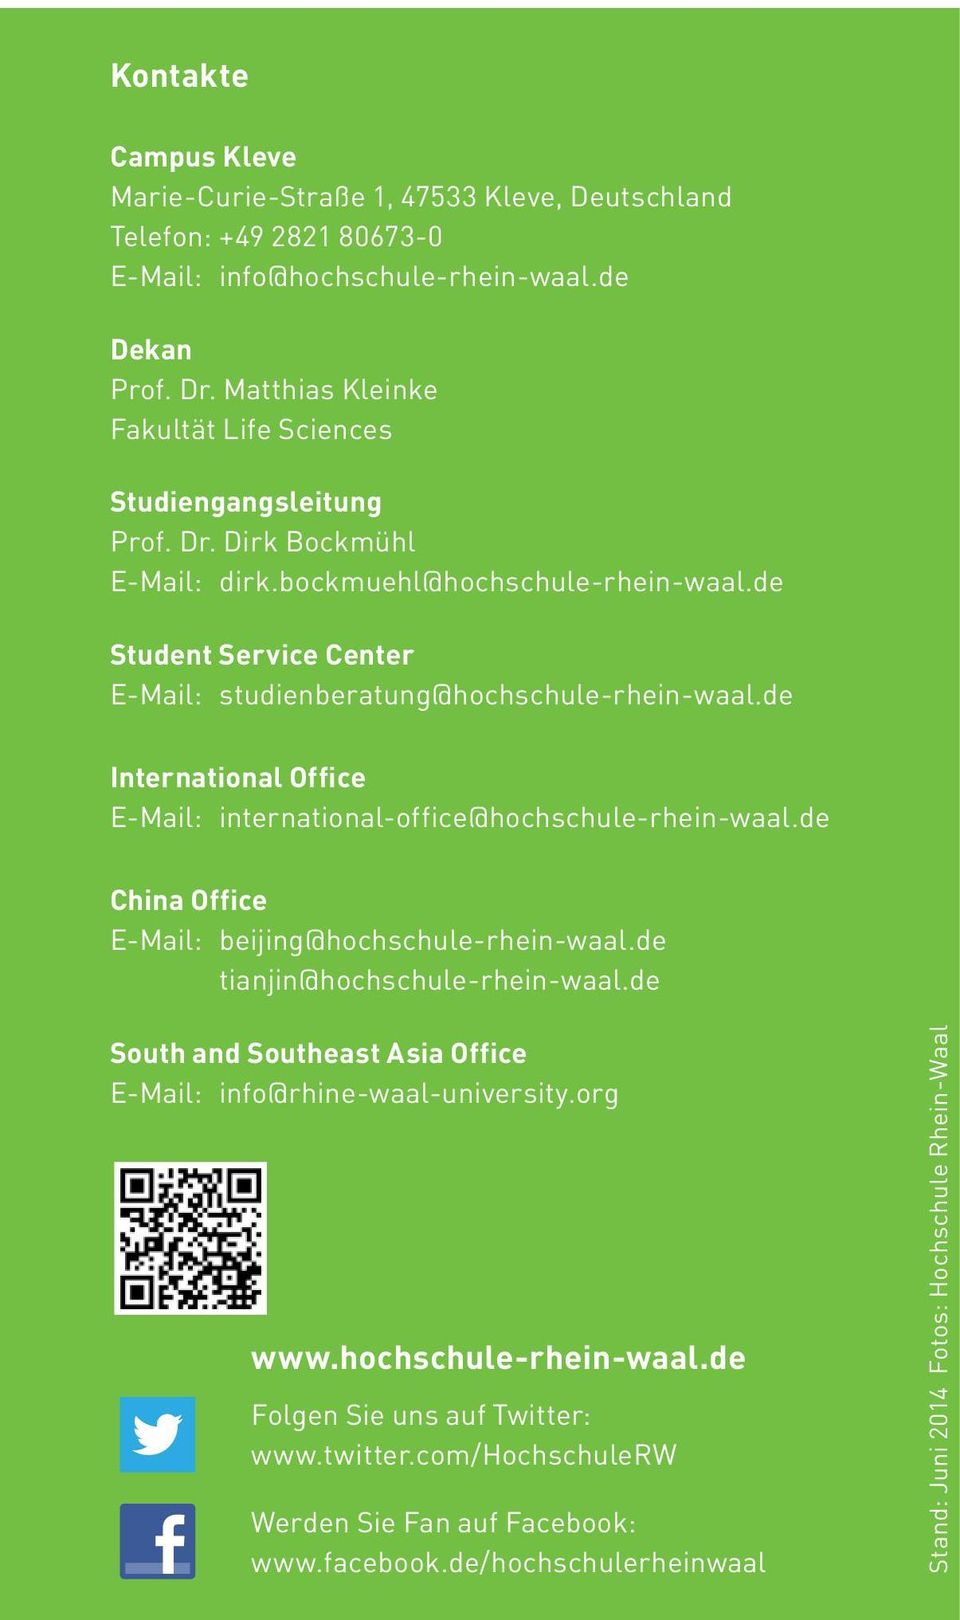 de Student Service Center E-Mail: studienberatung@hochschule-rhein-waal.de International Office E-Mail: international-office@hochschule-rhein-waal.